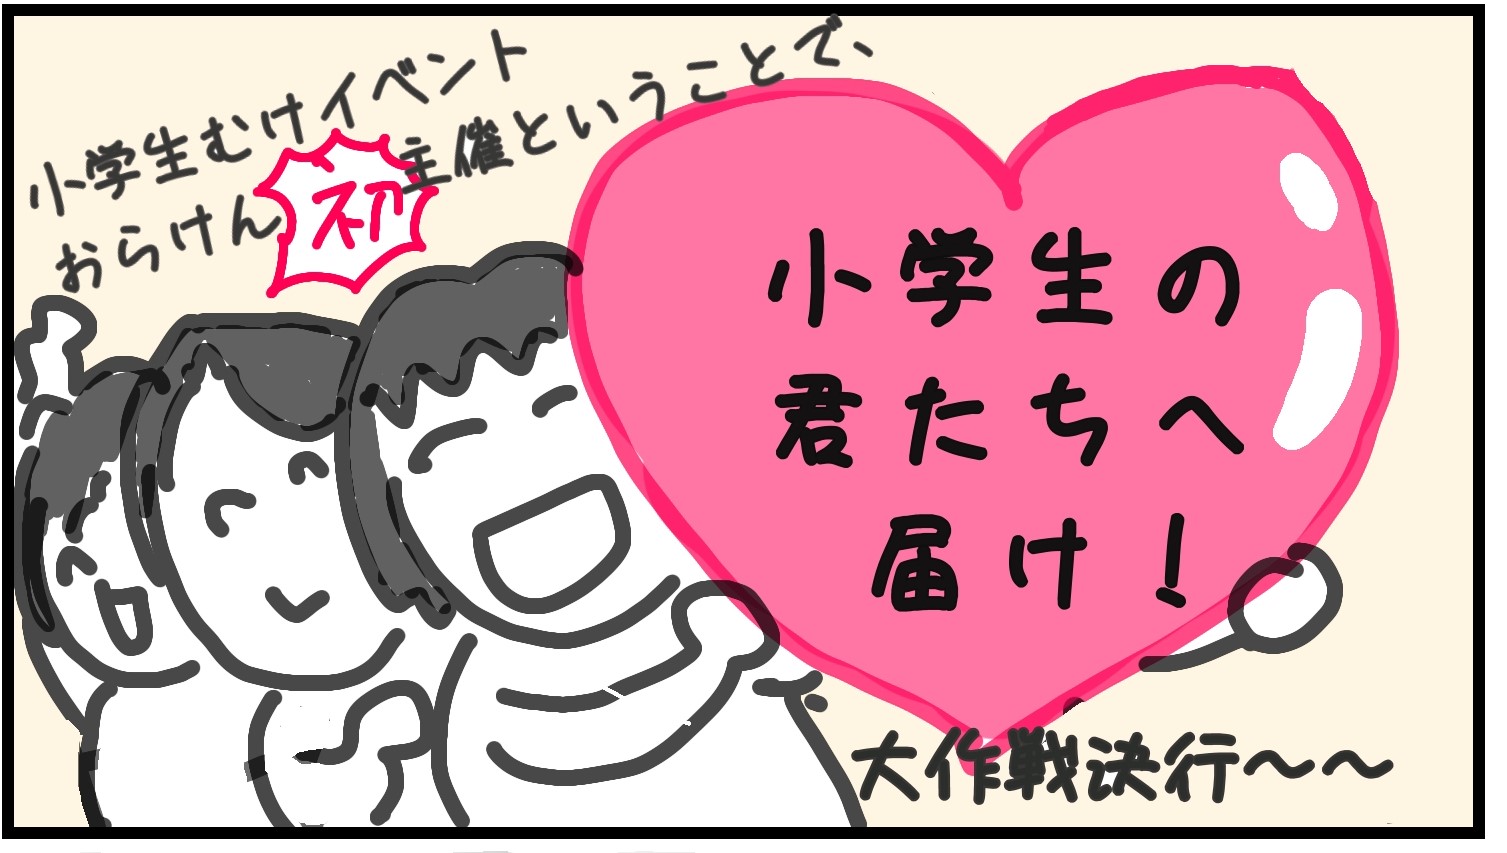 【4コマ漫画】0815トークイベント「オランウータンに会いたい」御礼！